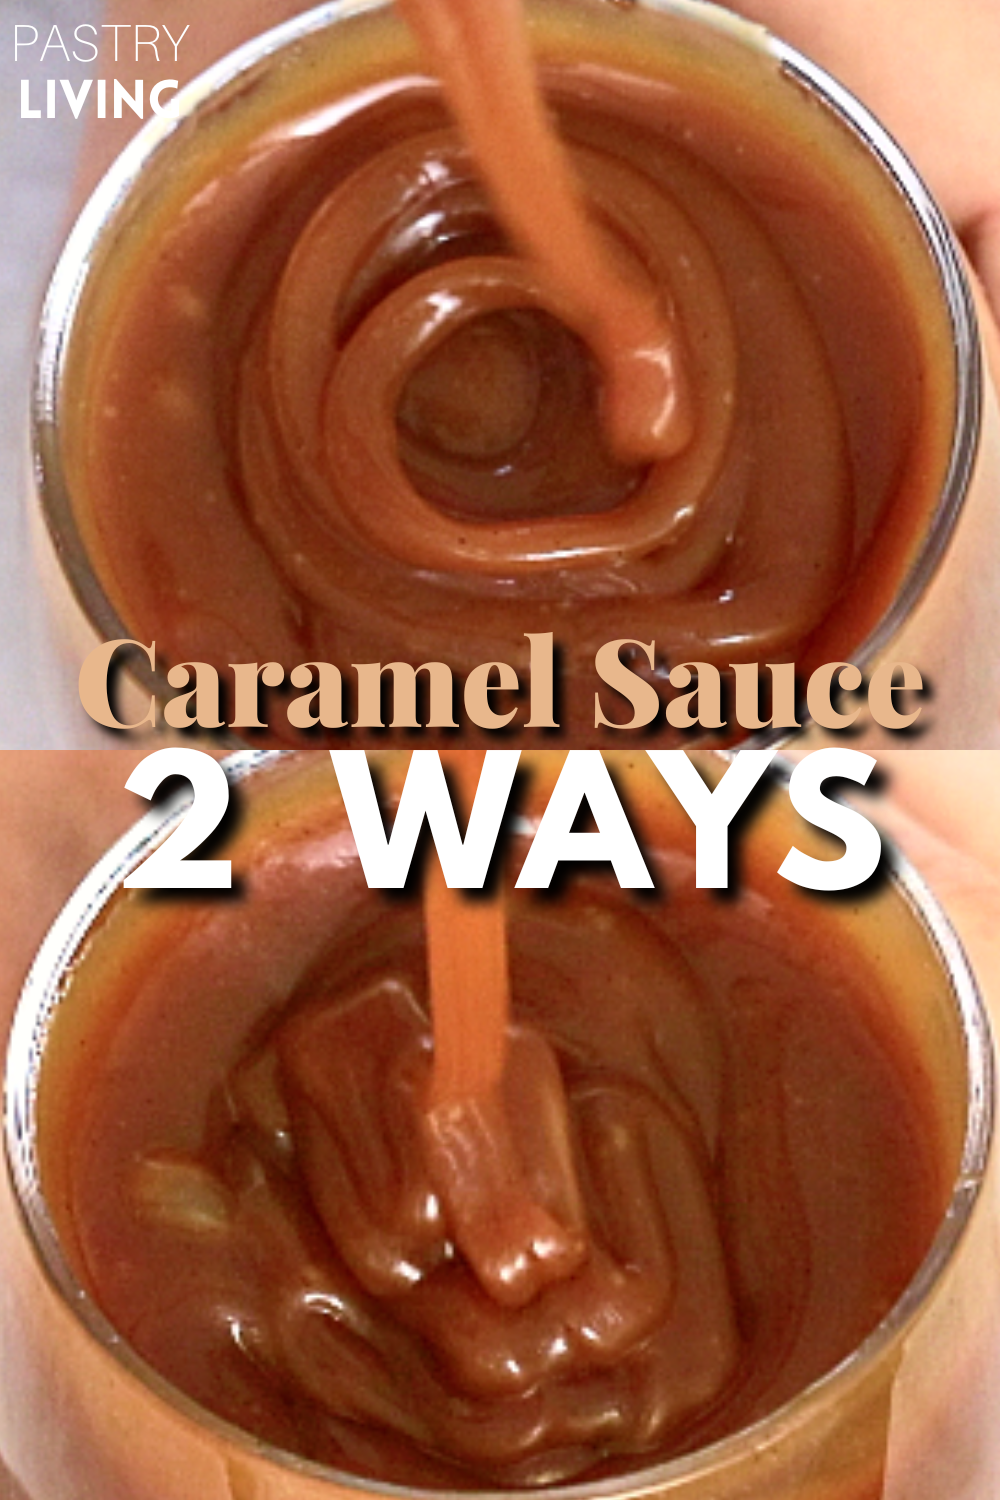 2 types of caramel sauce - dry caramel sauce and wet caramel sauce